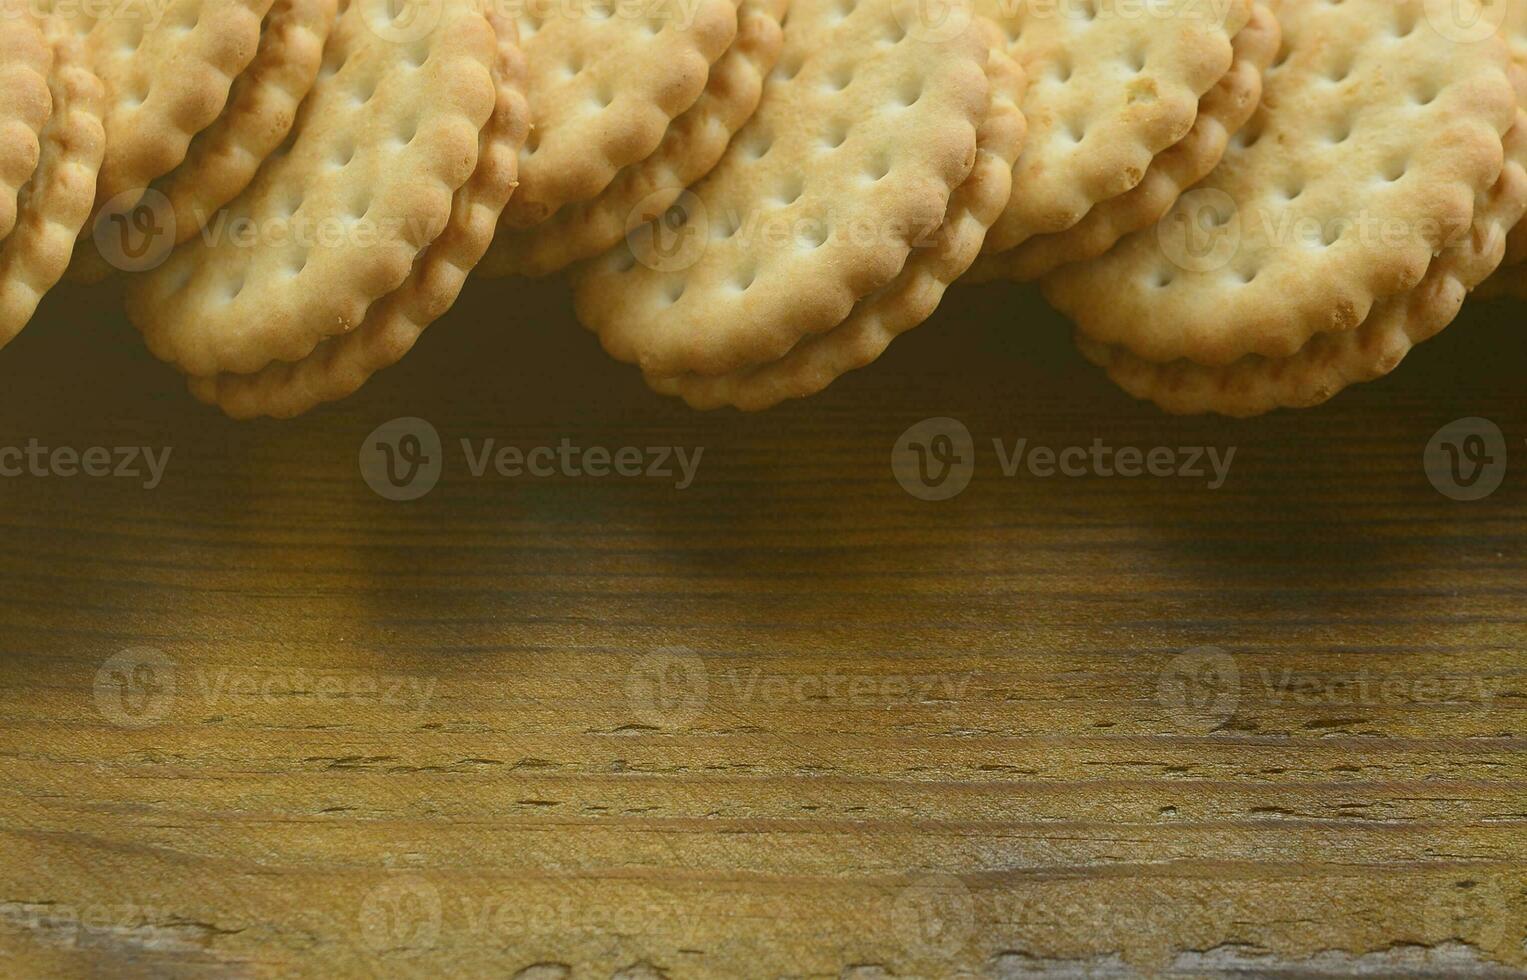 una galleta sándwich redonda con relleno de coco se encuentra en grandes cantidades sobre una superficie de madera marrón. foto de golosinas comestibles sobre un fondo de madera con espacio de copia